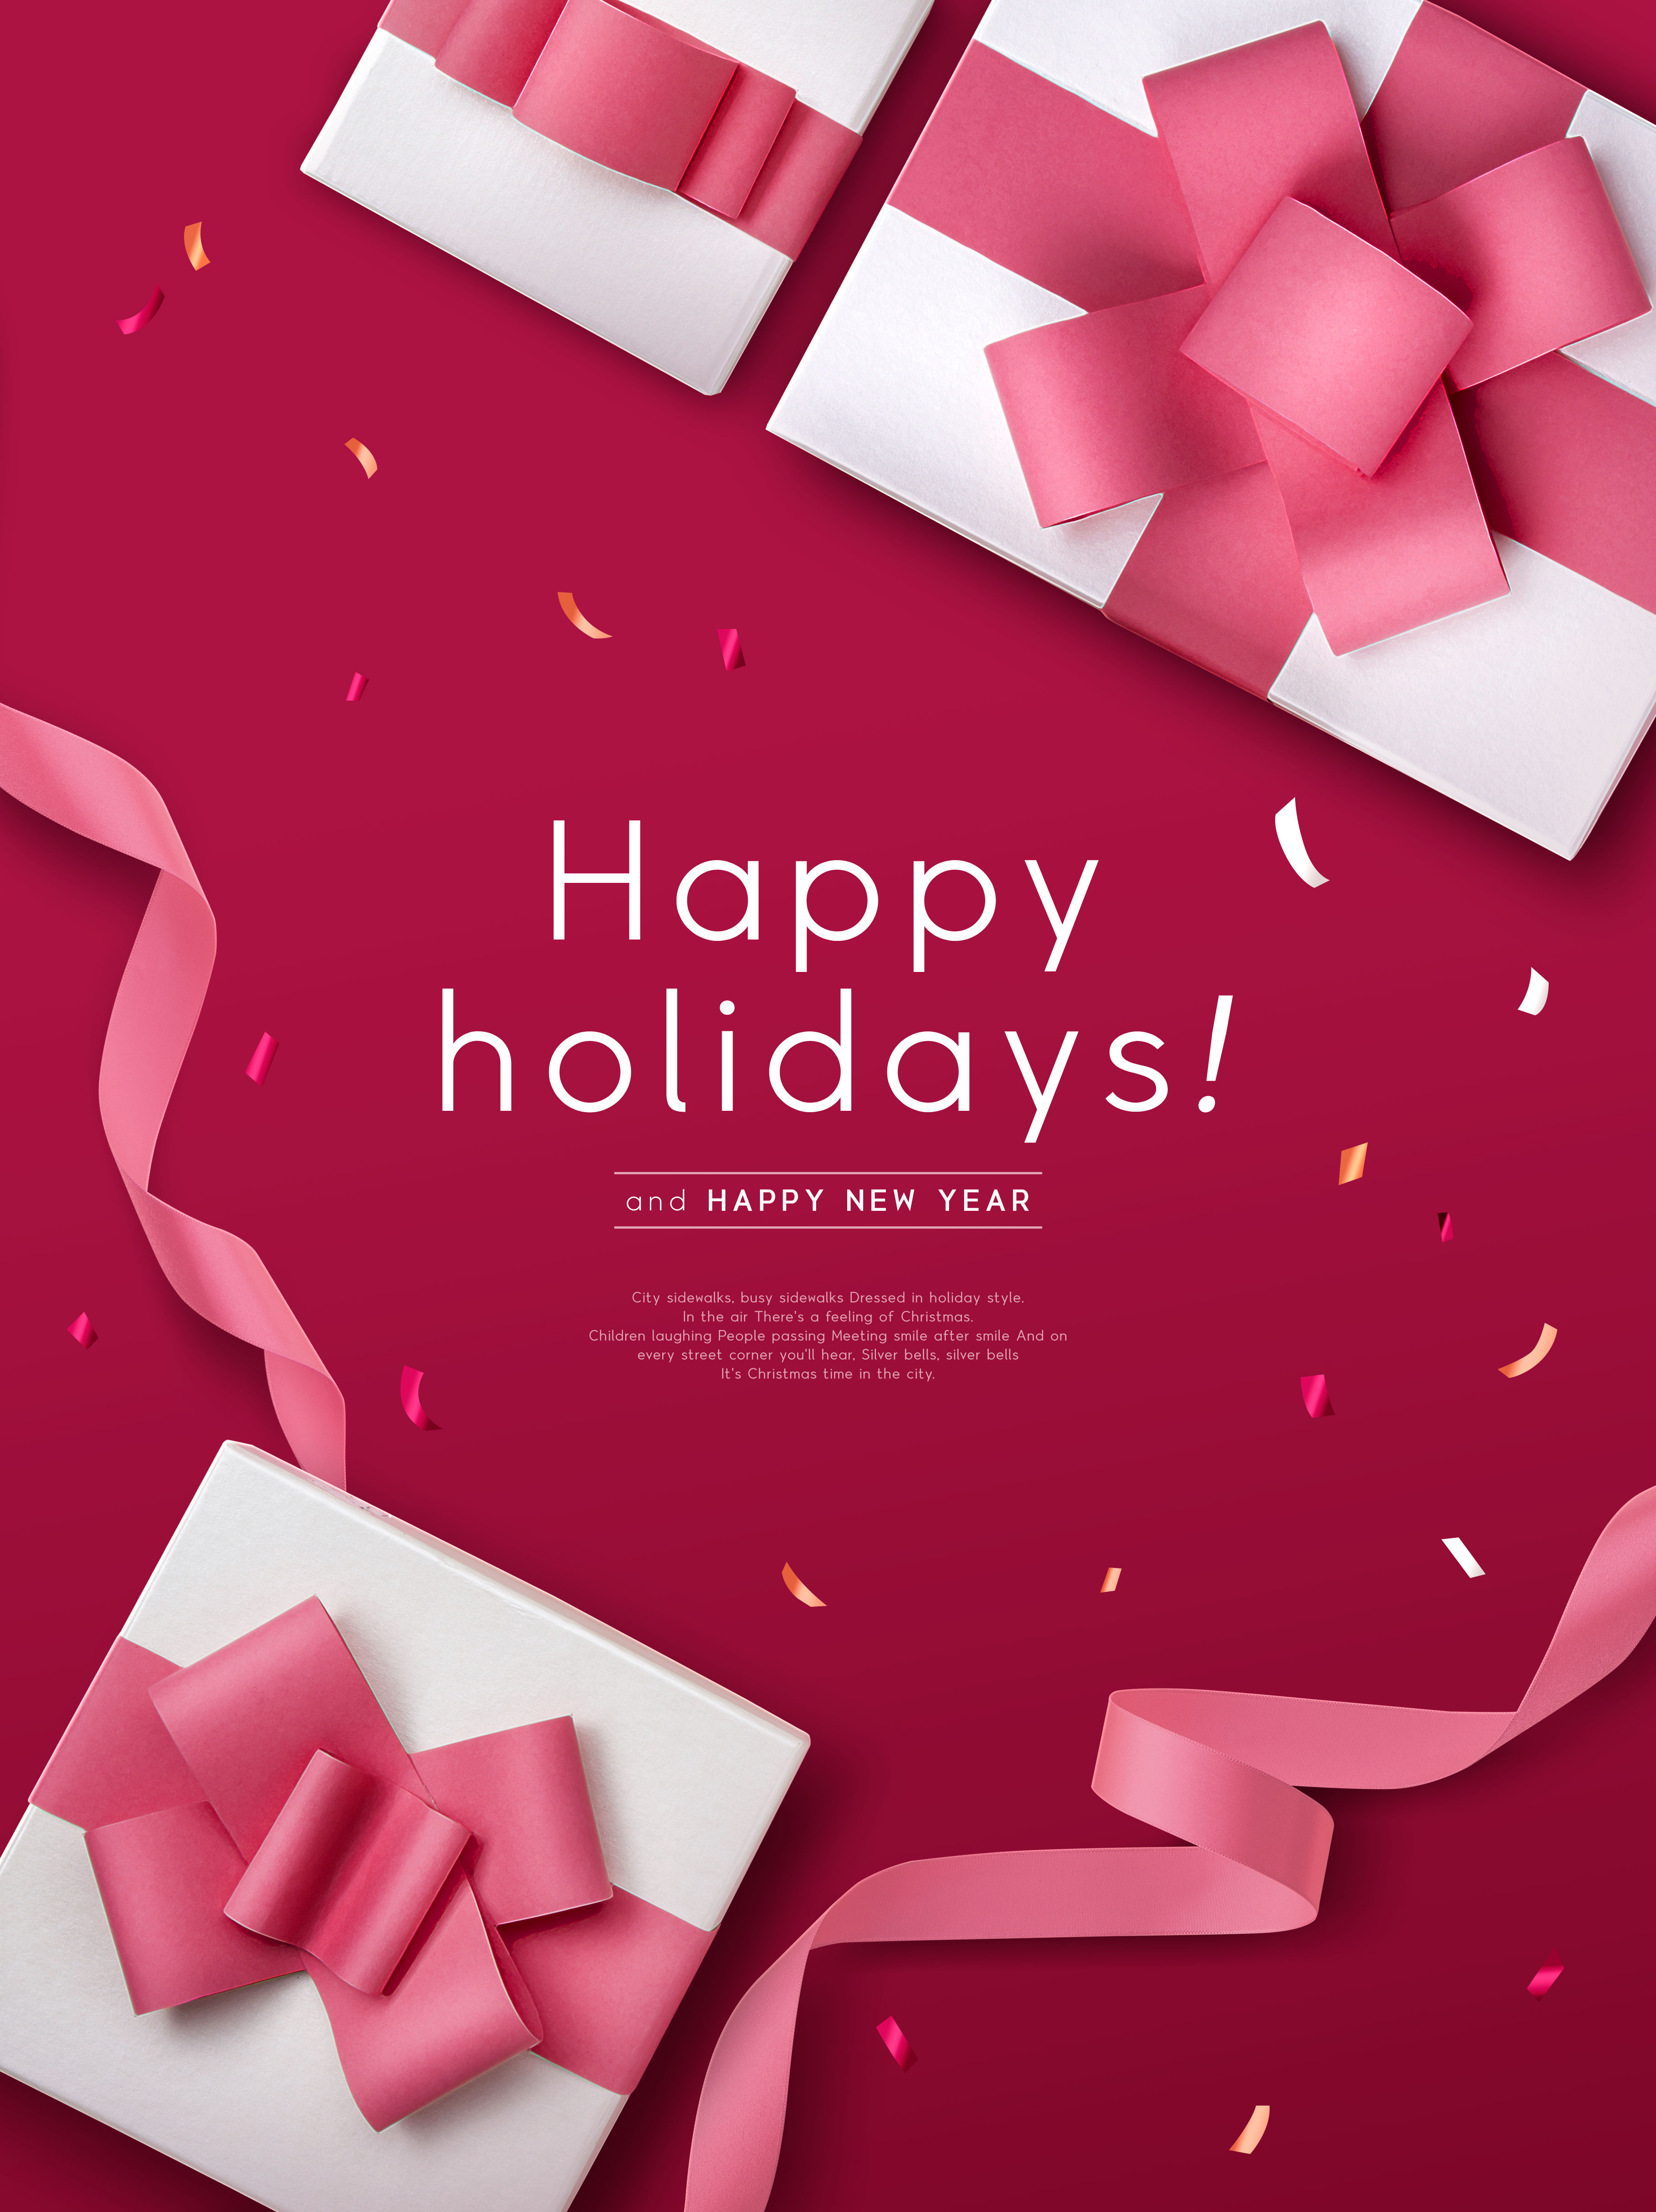 圣诞节日/新年快乐礼品促销活动宣传海报模板插图